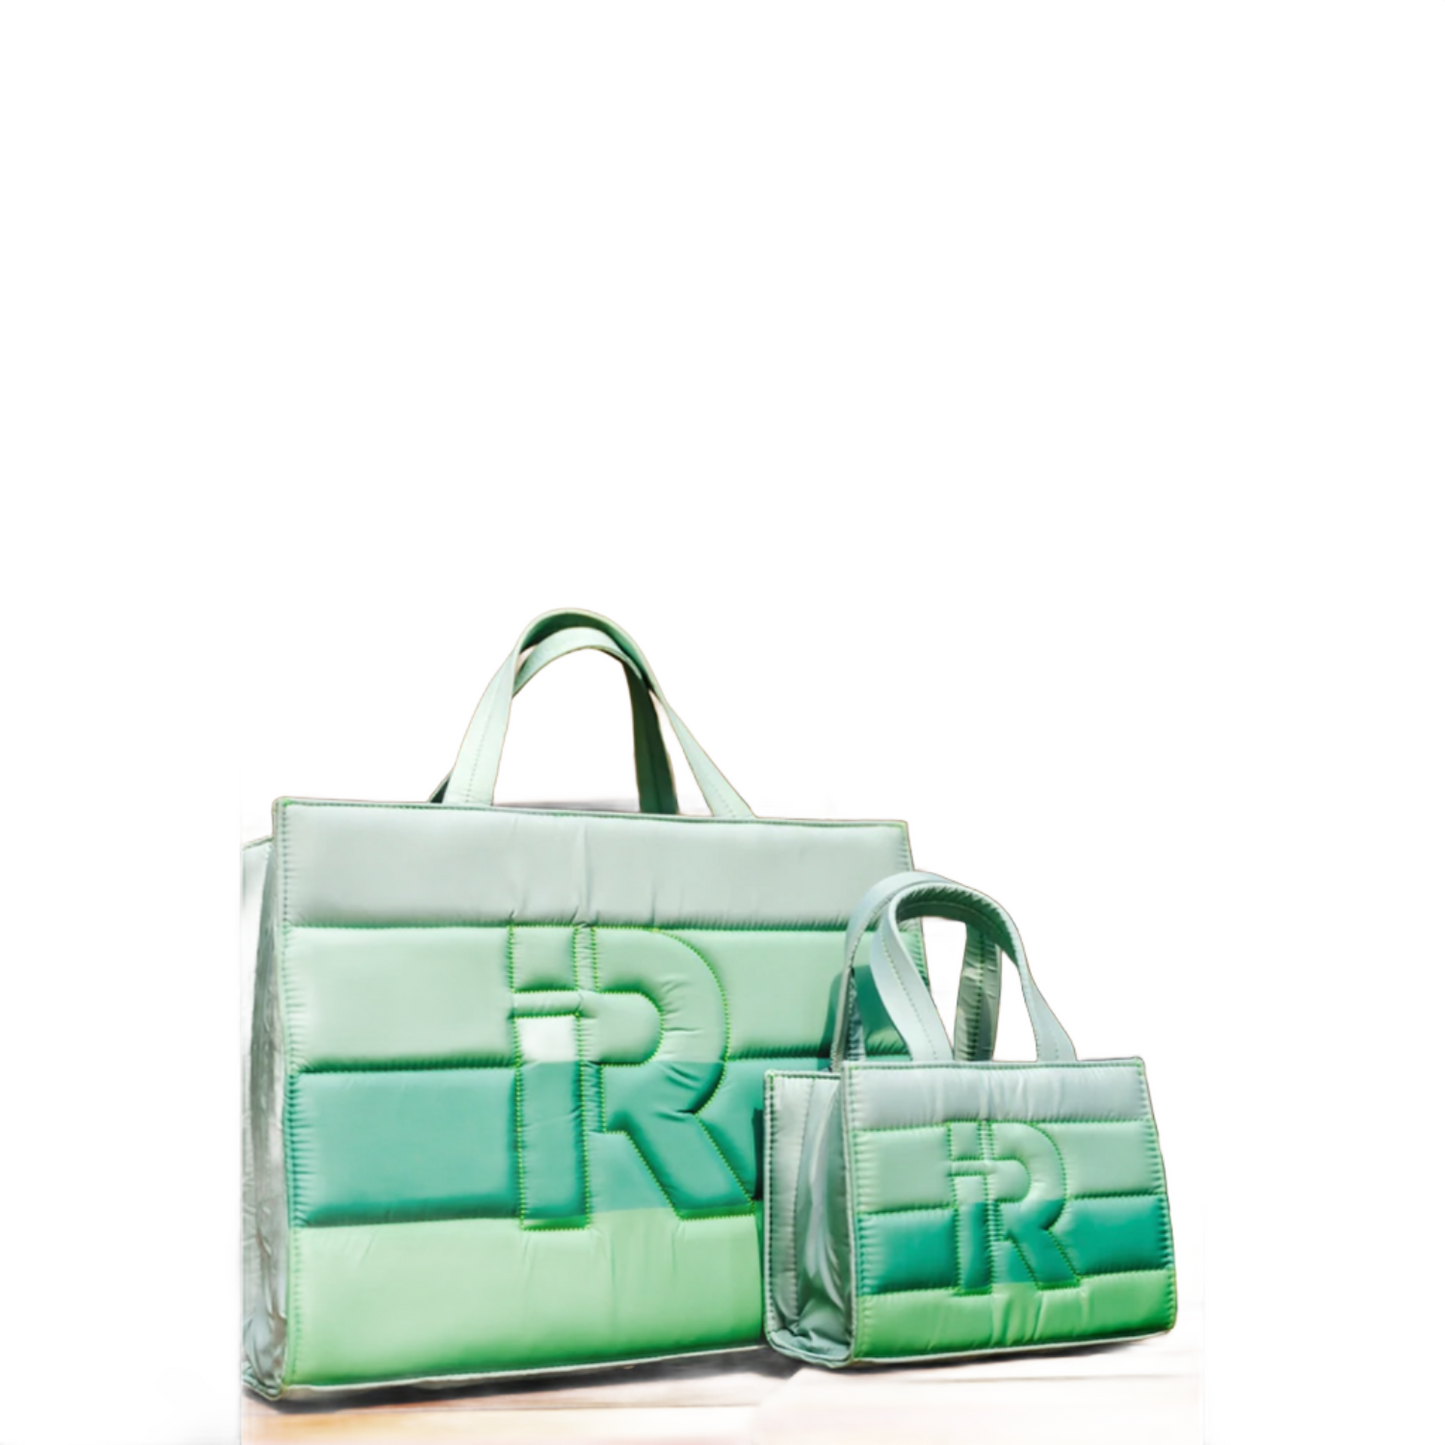 Iridium | Small Essential Bag